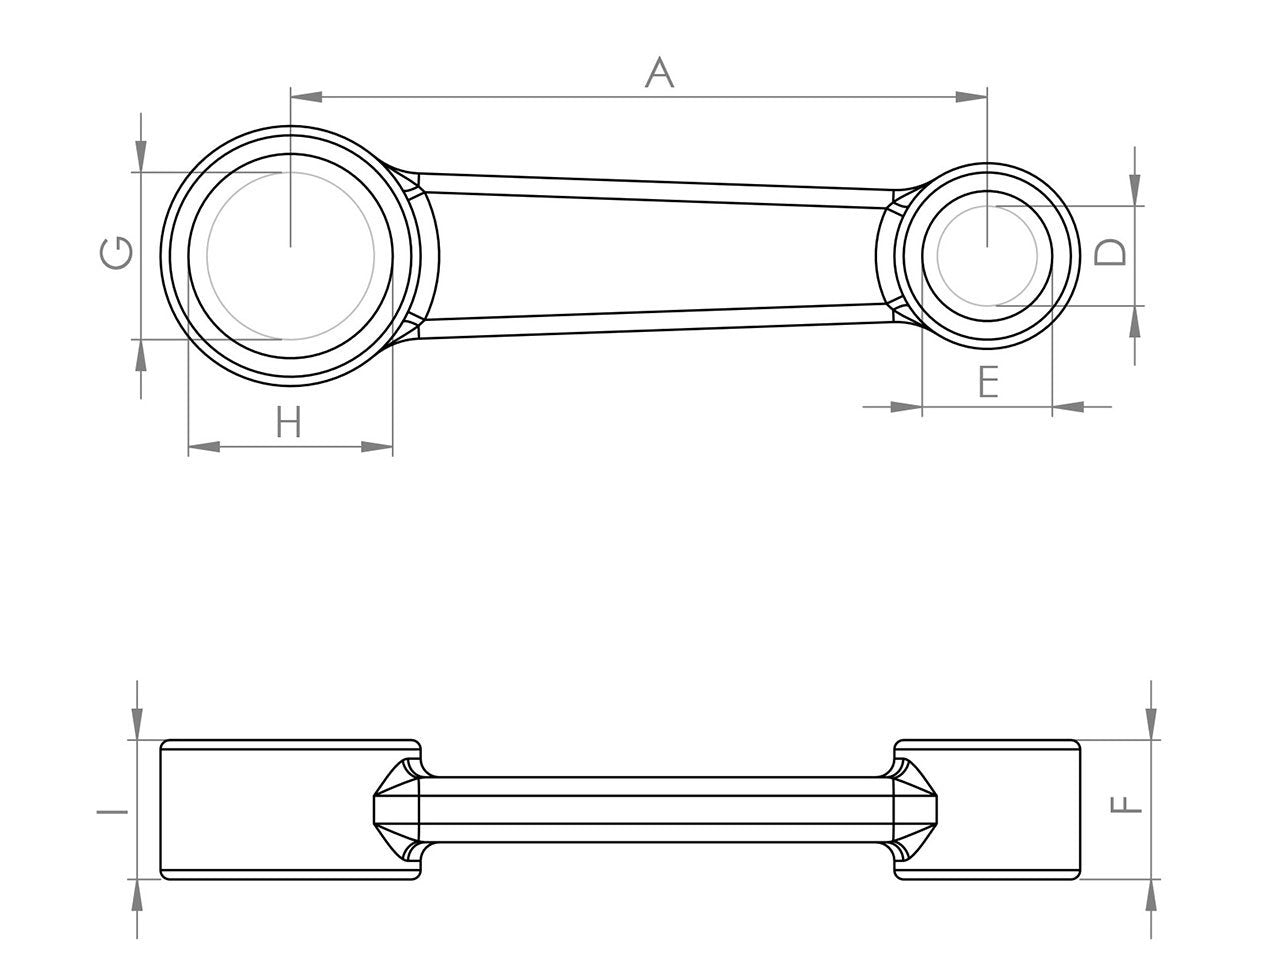 Zeichnung Barikit Pleuel für einen KTM SX 65 Motor mit Bemaßung.